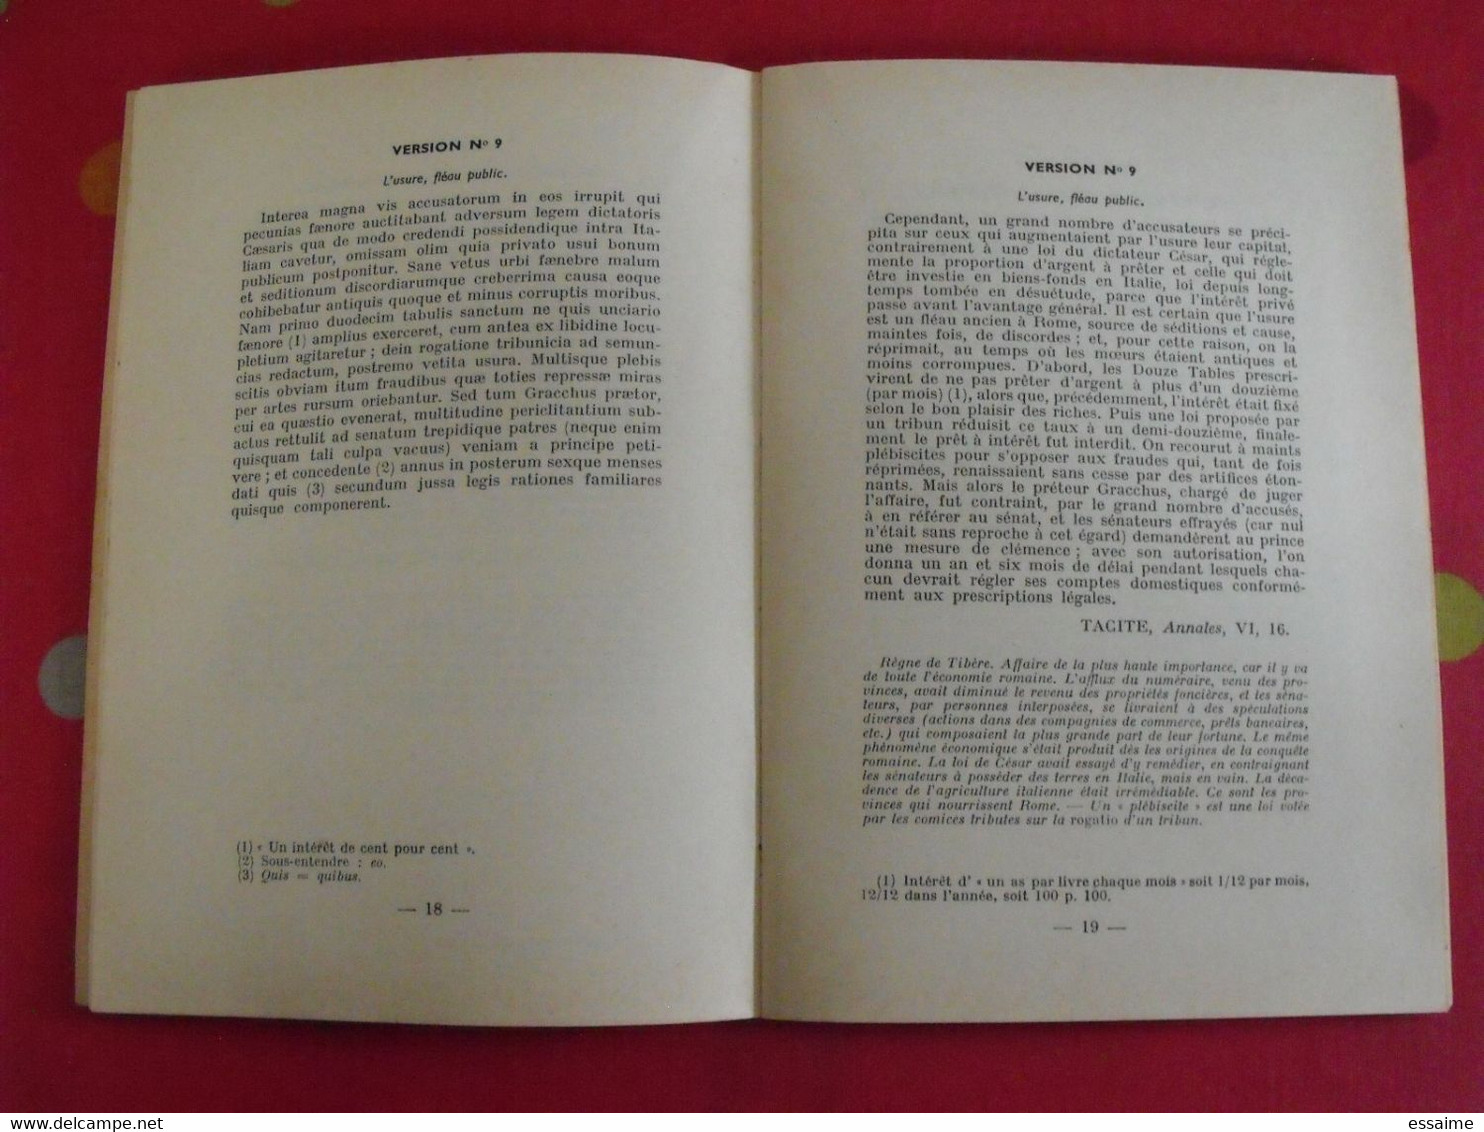 Trente Versions Latines à L'usages Des Secondes ABC + Livre Du Professeur. Nathan 1959 - Learning Cards